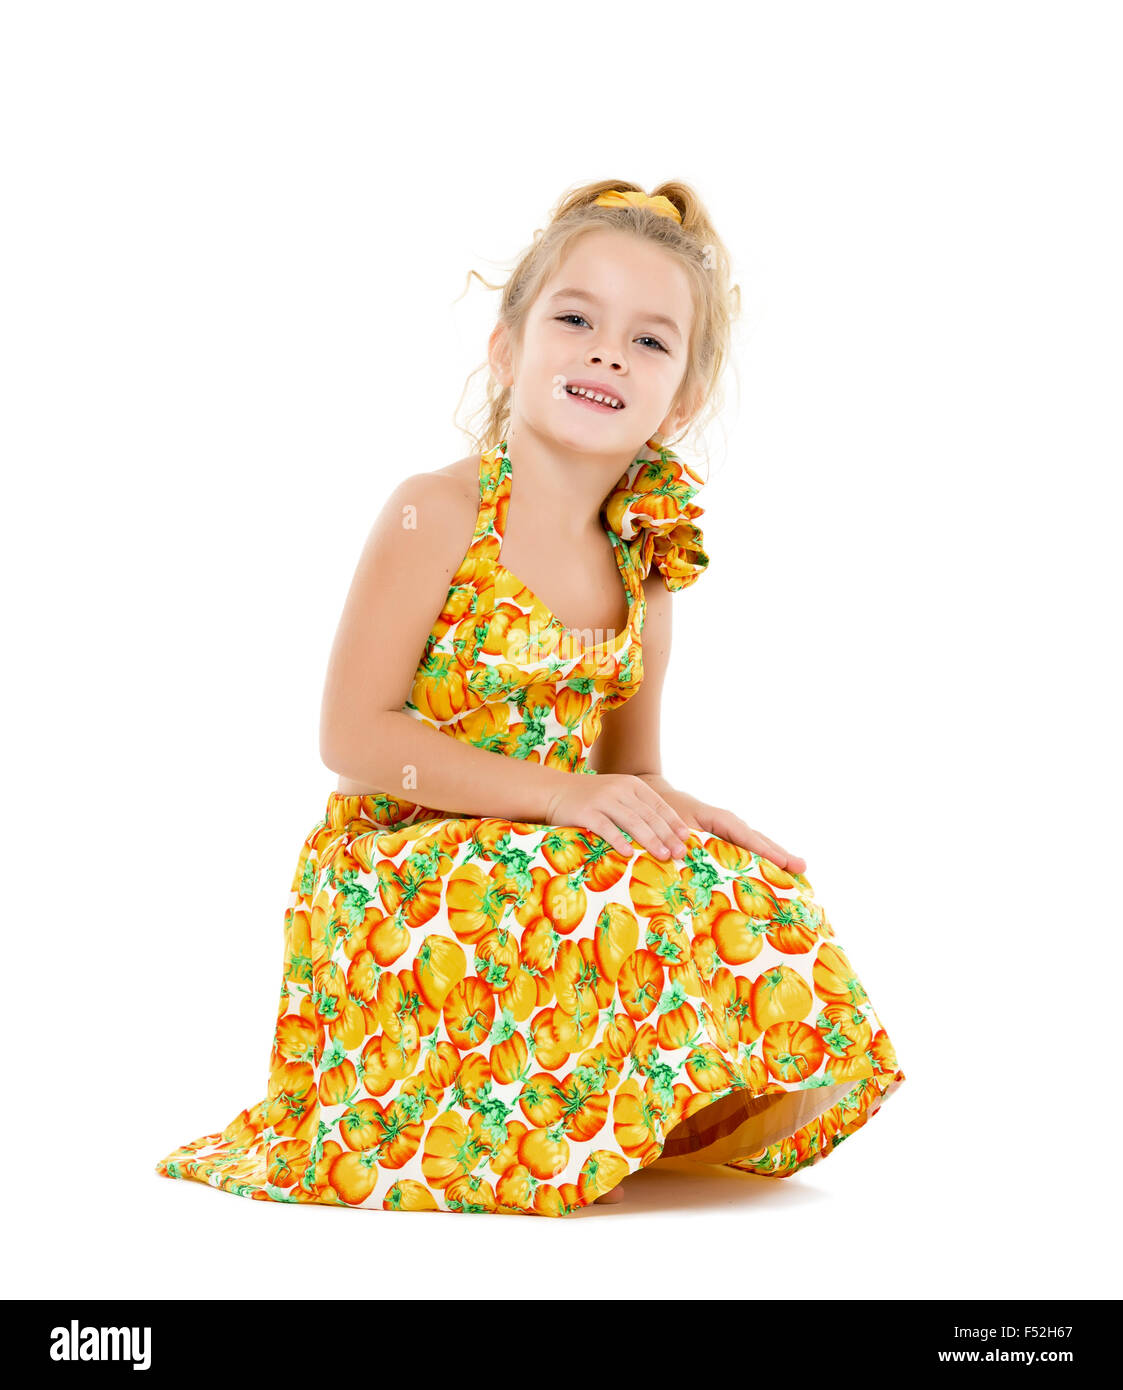 Petite fille dans une robe jaune, posant sur fond blanc Banque D'Images